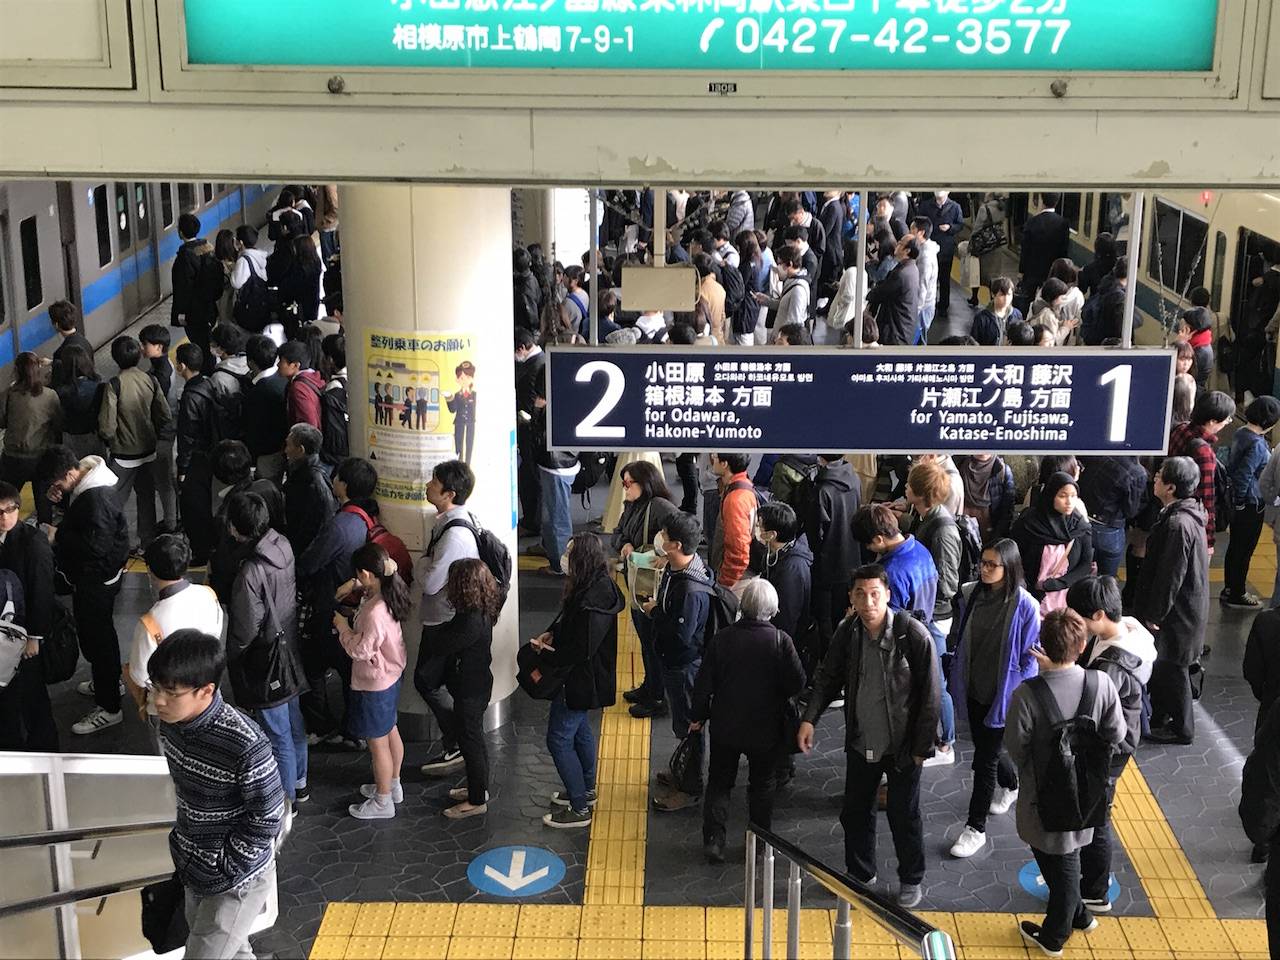 日本電車禮儀 而且記得唔好阻塞月台嘅樓梯通道！